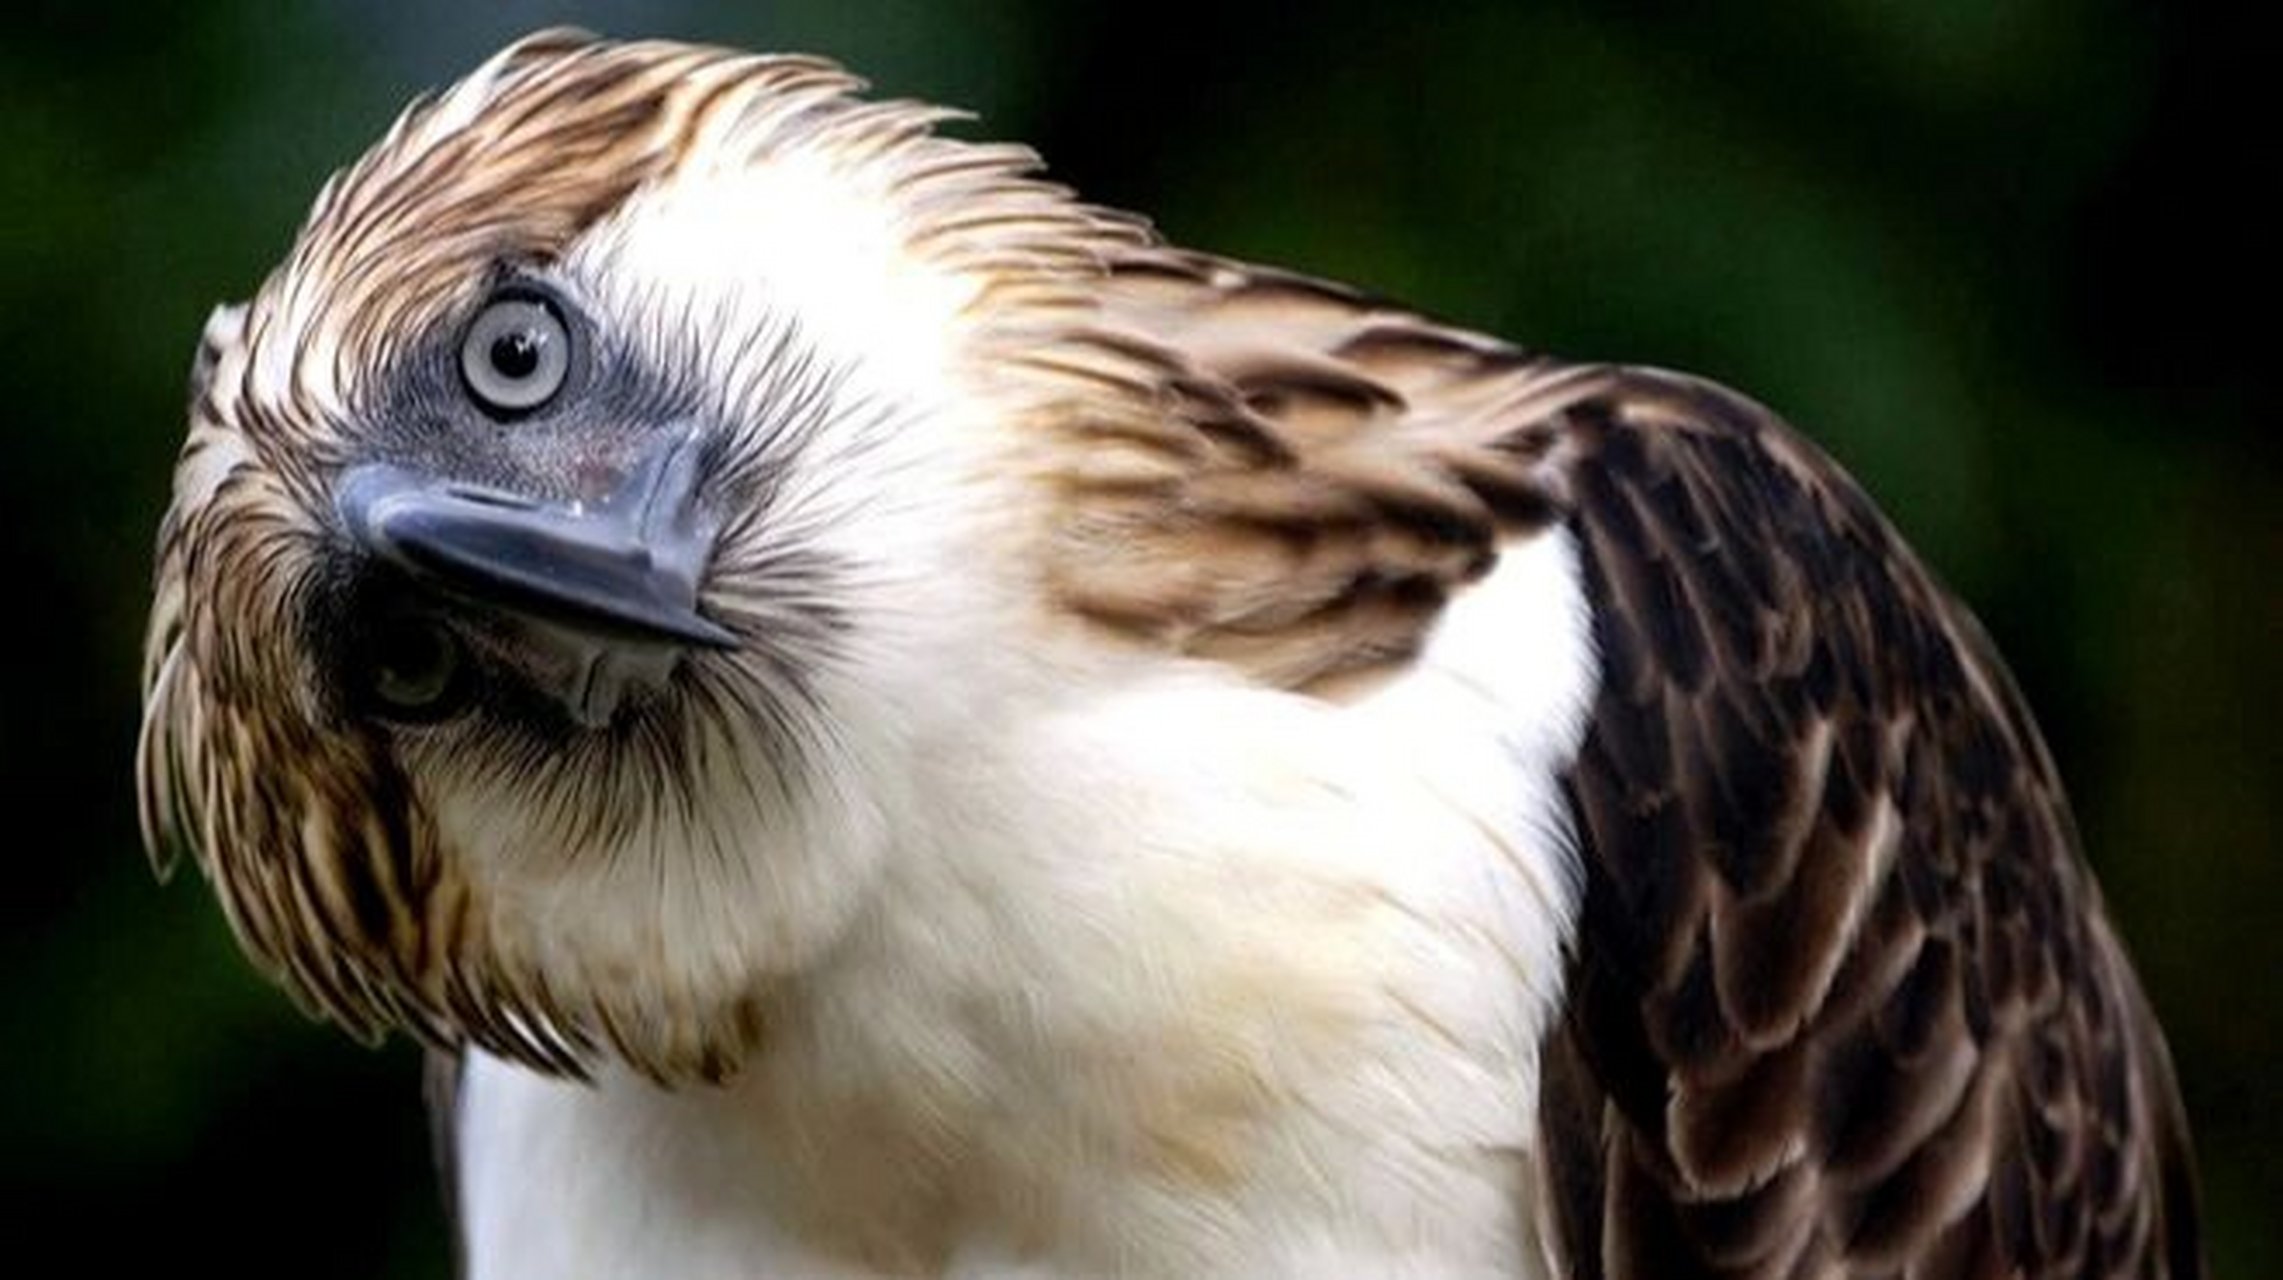 菲律宾国鸟——食猿雕 食猿雕:鹰科,食猿雕属鸟类